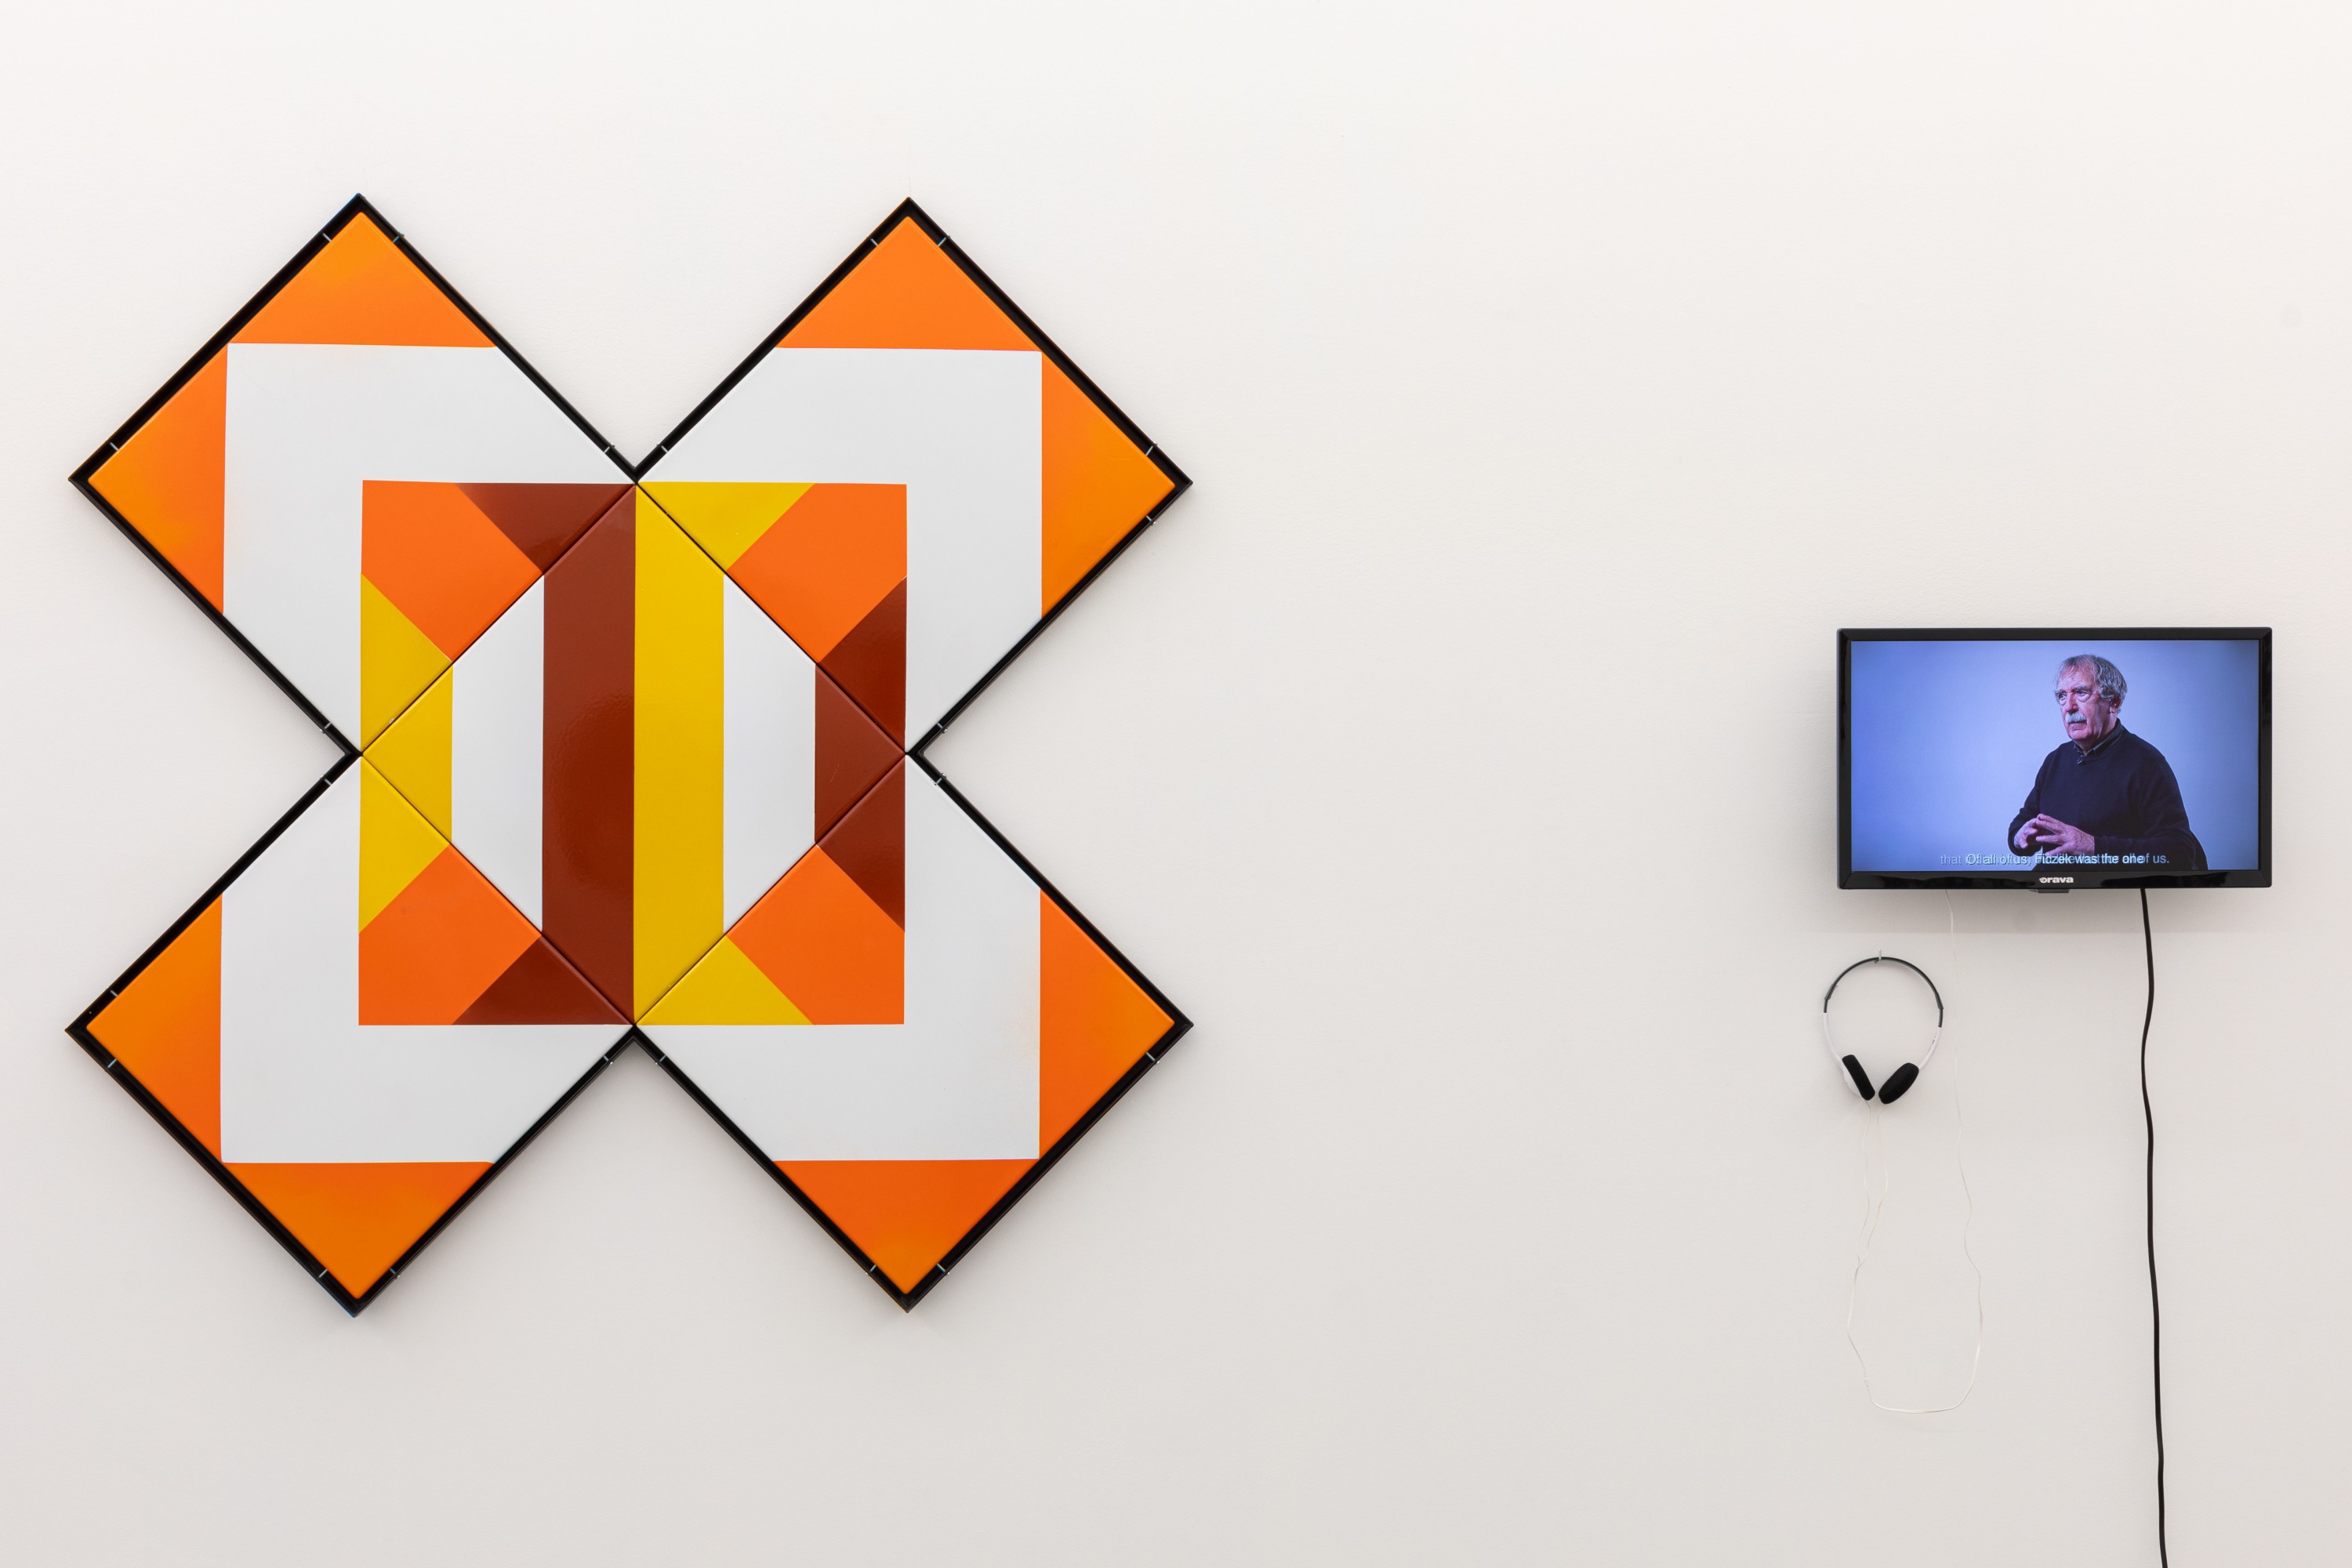 Pięć płytek ceramicznych z geometrycznym wzorem o ciepłych barwach, zawieszonych na ścianie w taki sposób, aby tworzyły znak "X". Obok wisi mały ekran, na którym wyświetlany jest film. Obok ekranu znajdują się czarne słuchawki.